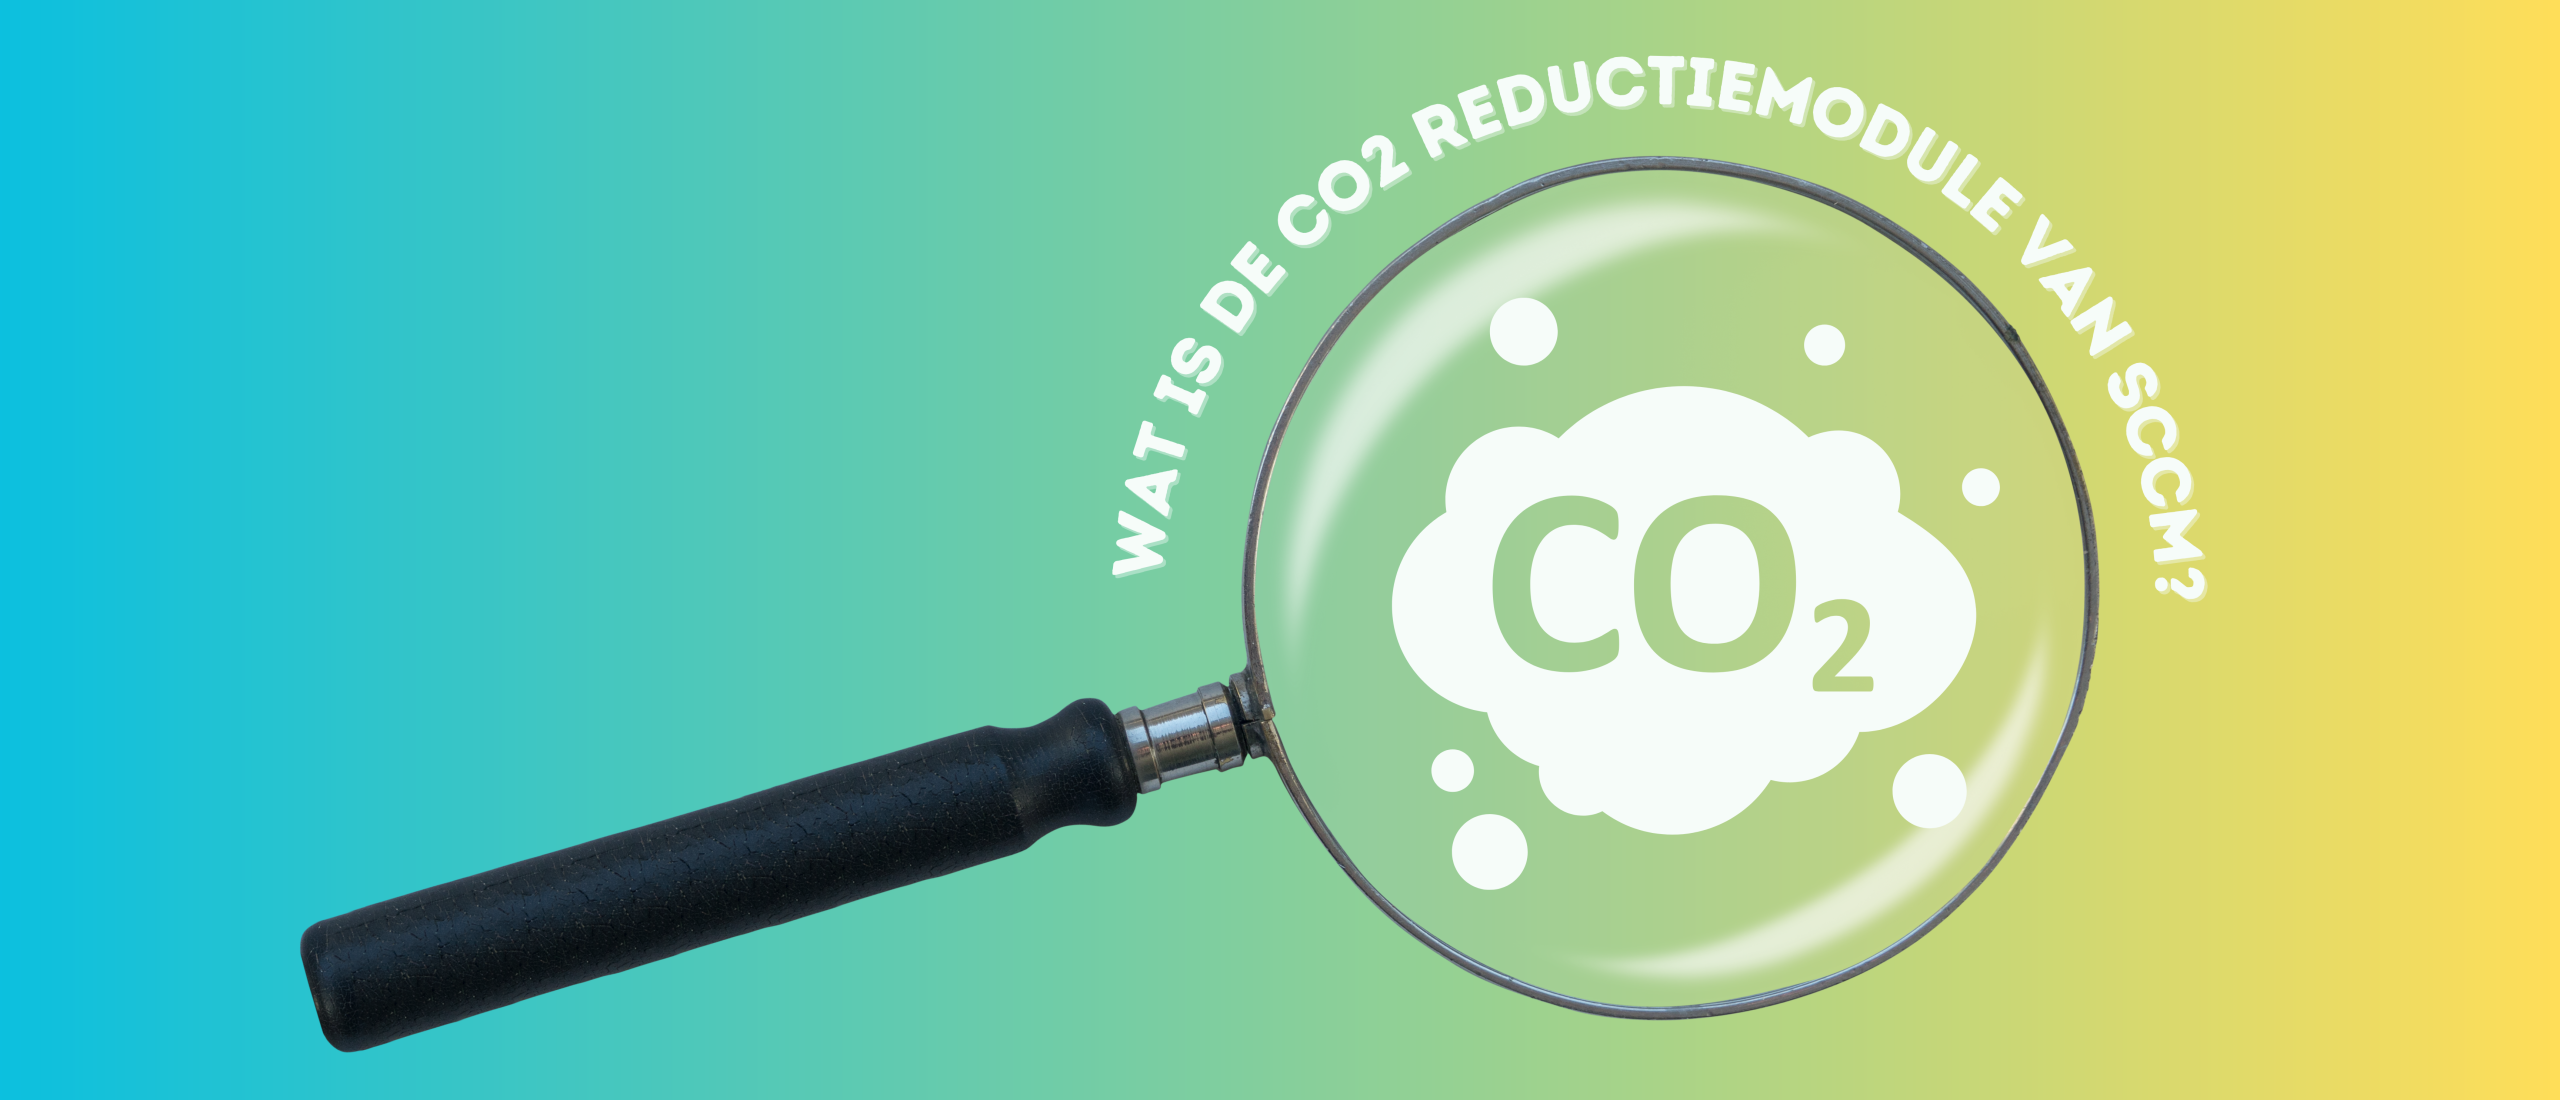 Wat is de CO2-reductiemodule van SCCM?